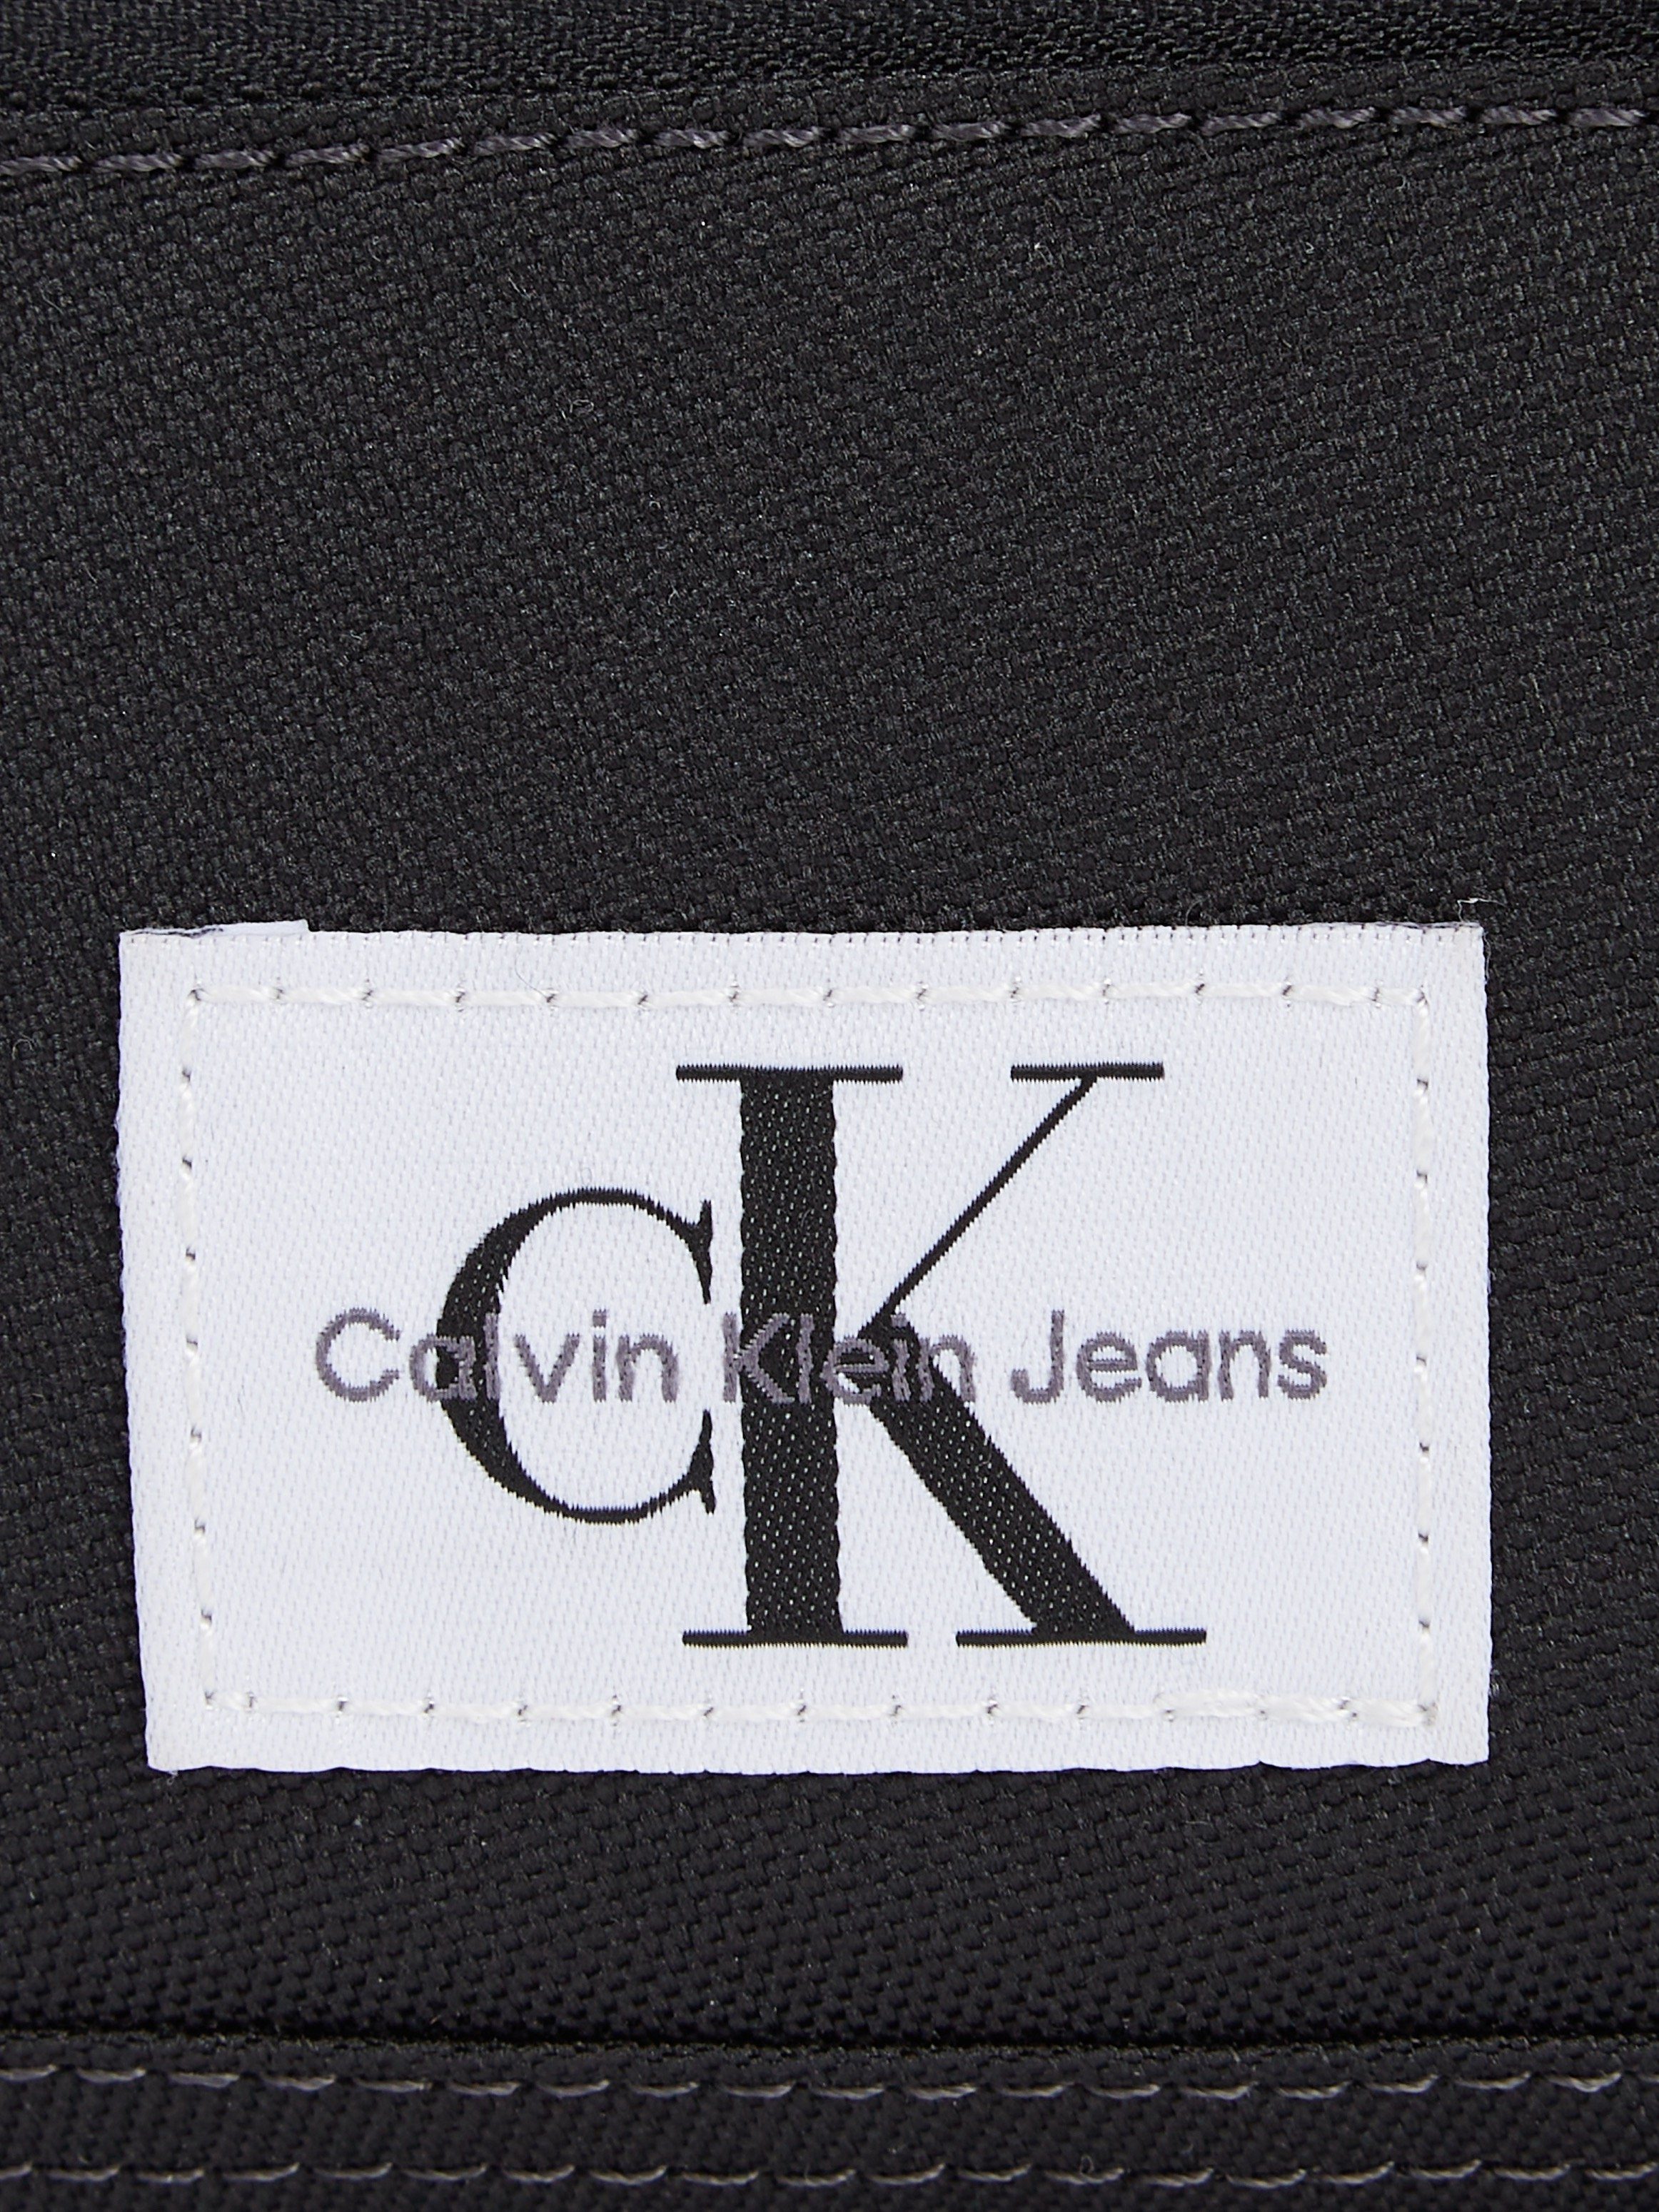 Jeans BAG21 praktischen SPORT W, schwarz Bag CAMERA Design Klein Mini Calvin ESSENTIALS im